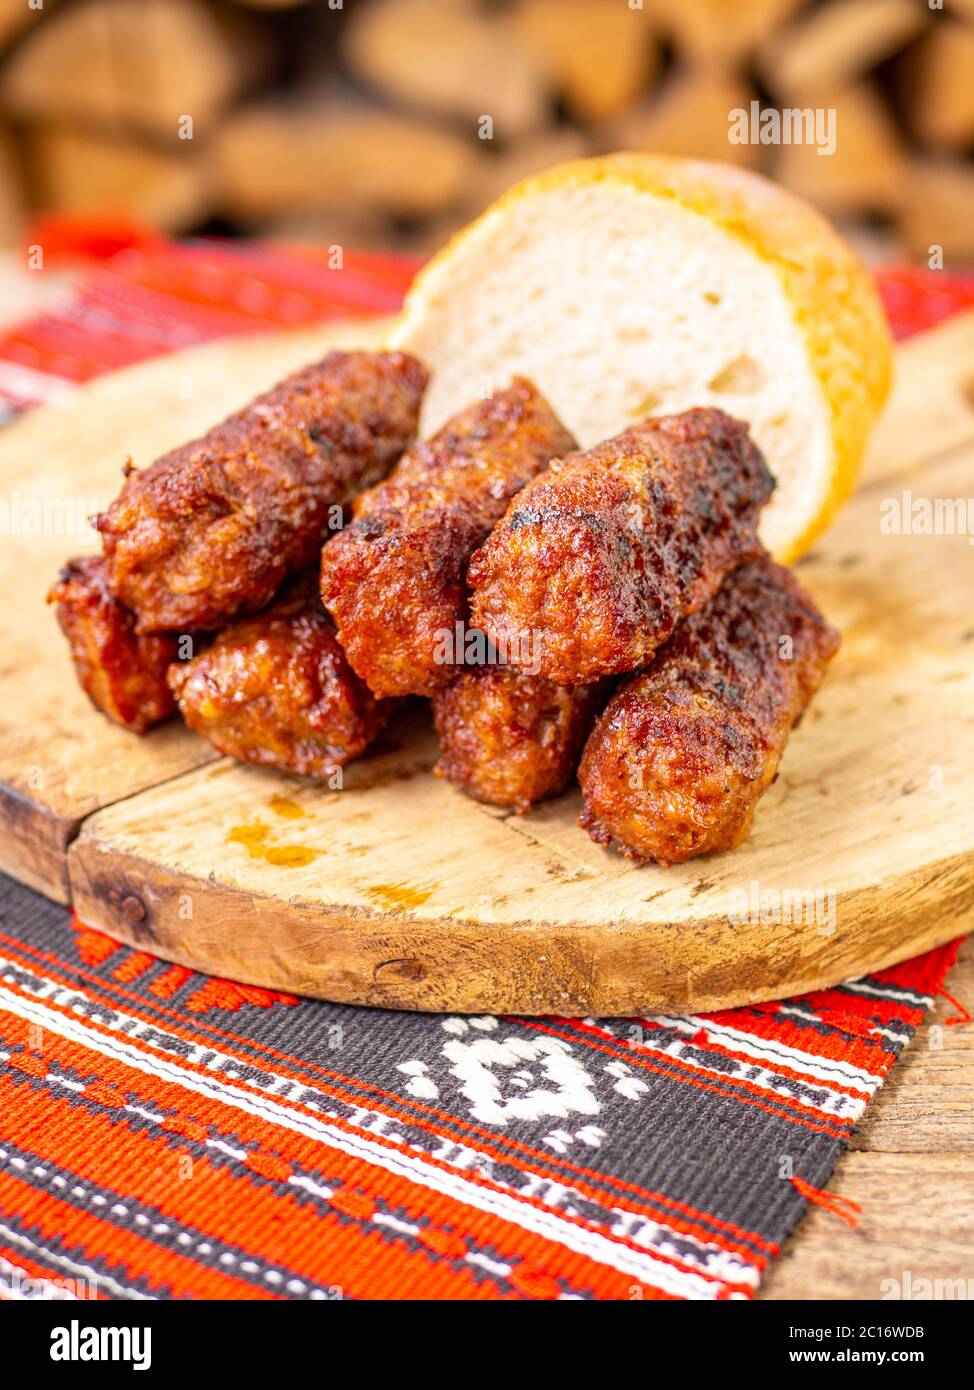 salsiccia di rotolo di carne senza pelle o specialità tradizionali dei balcani romeni otomana mici servita su un piatto di legno in un arredamento rustico Foto Stock